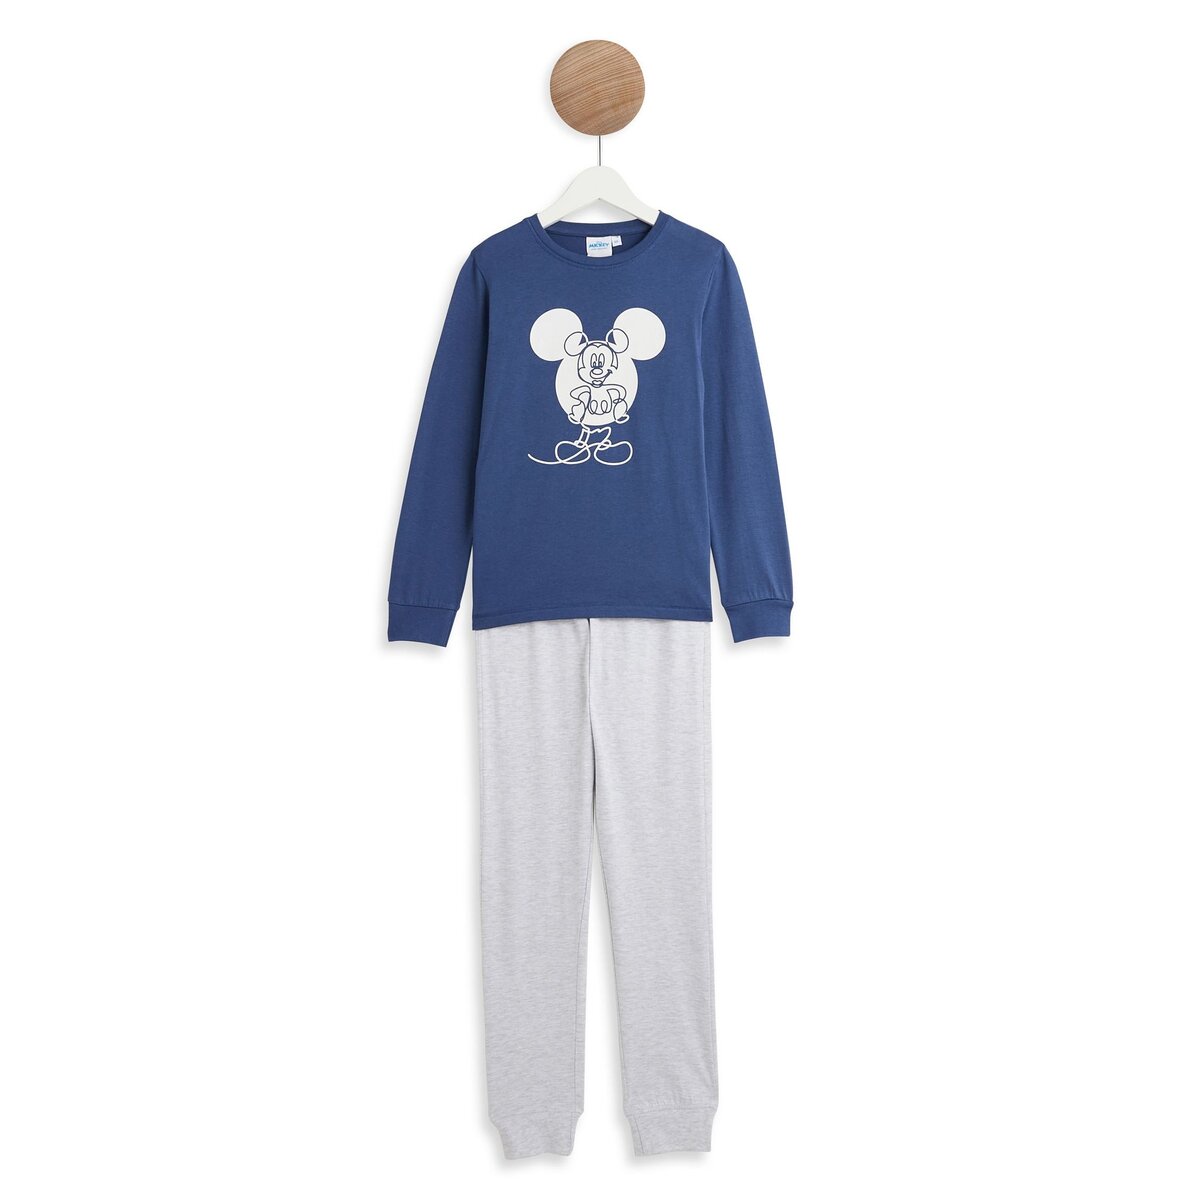 Pyjama coton Mickey